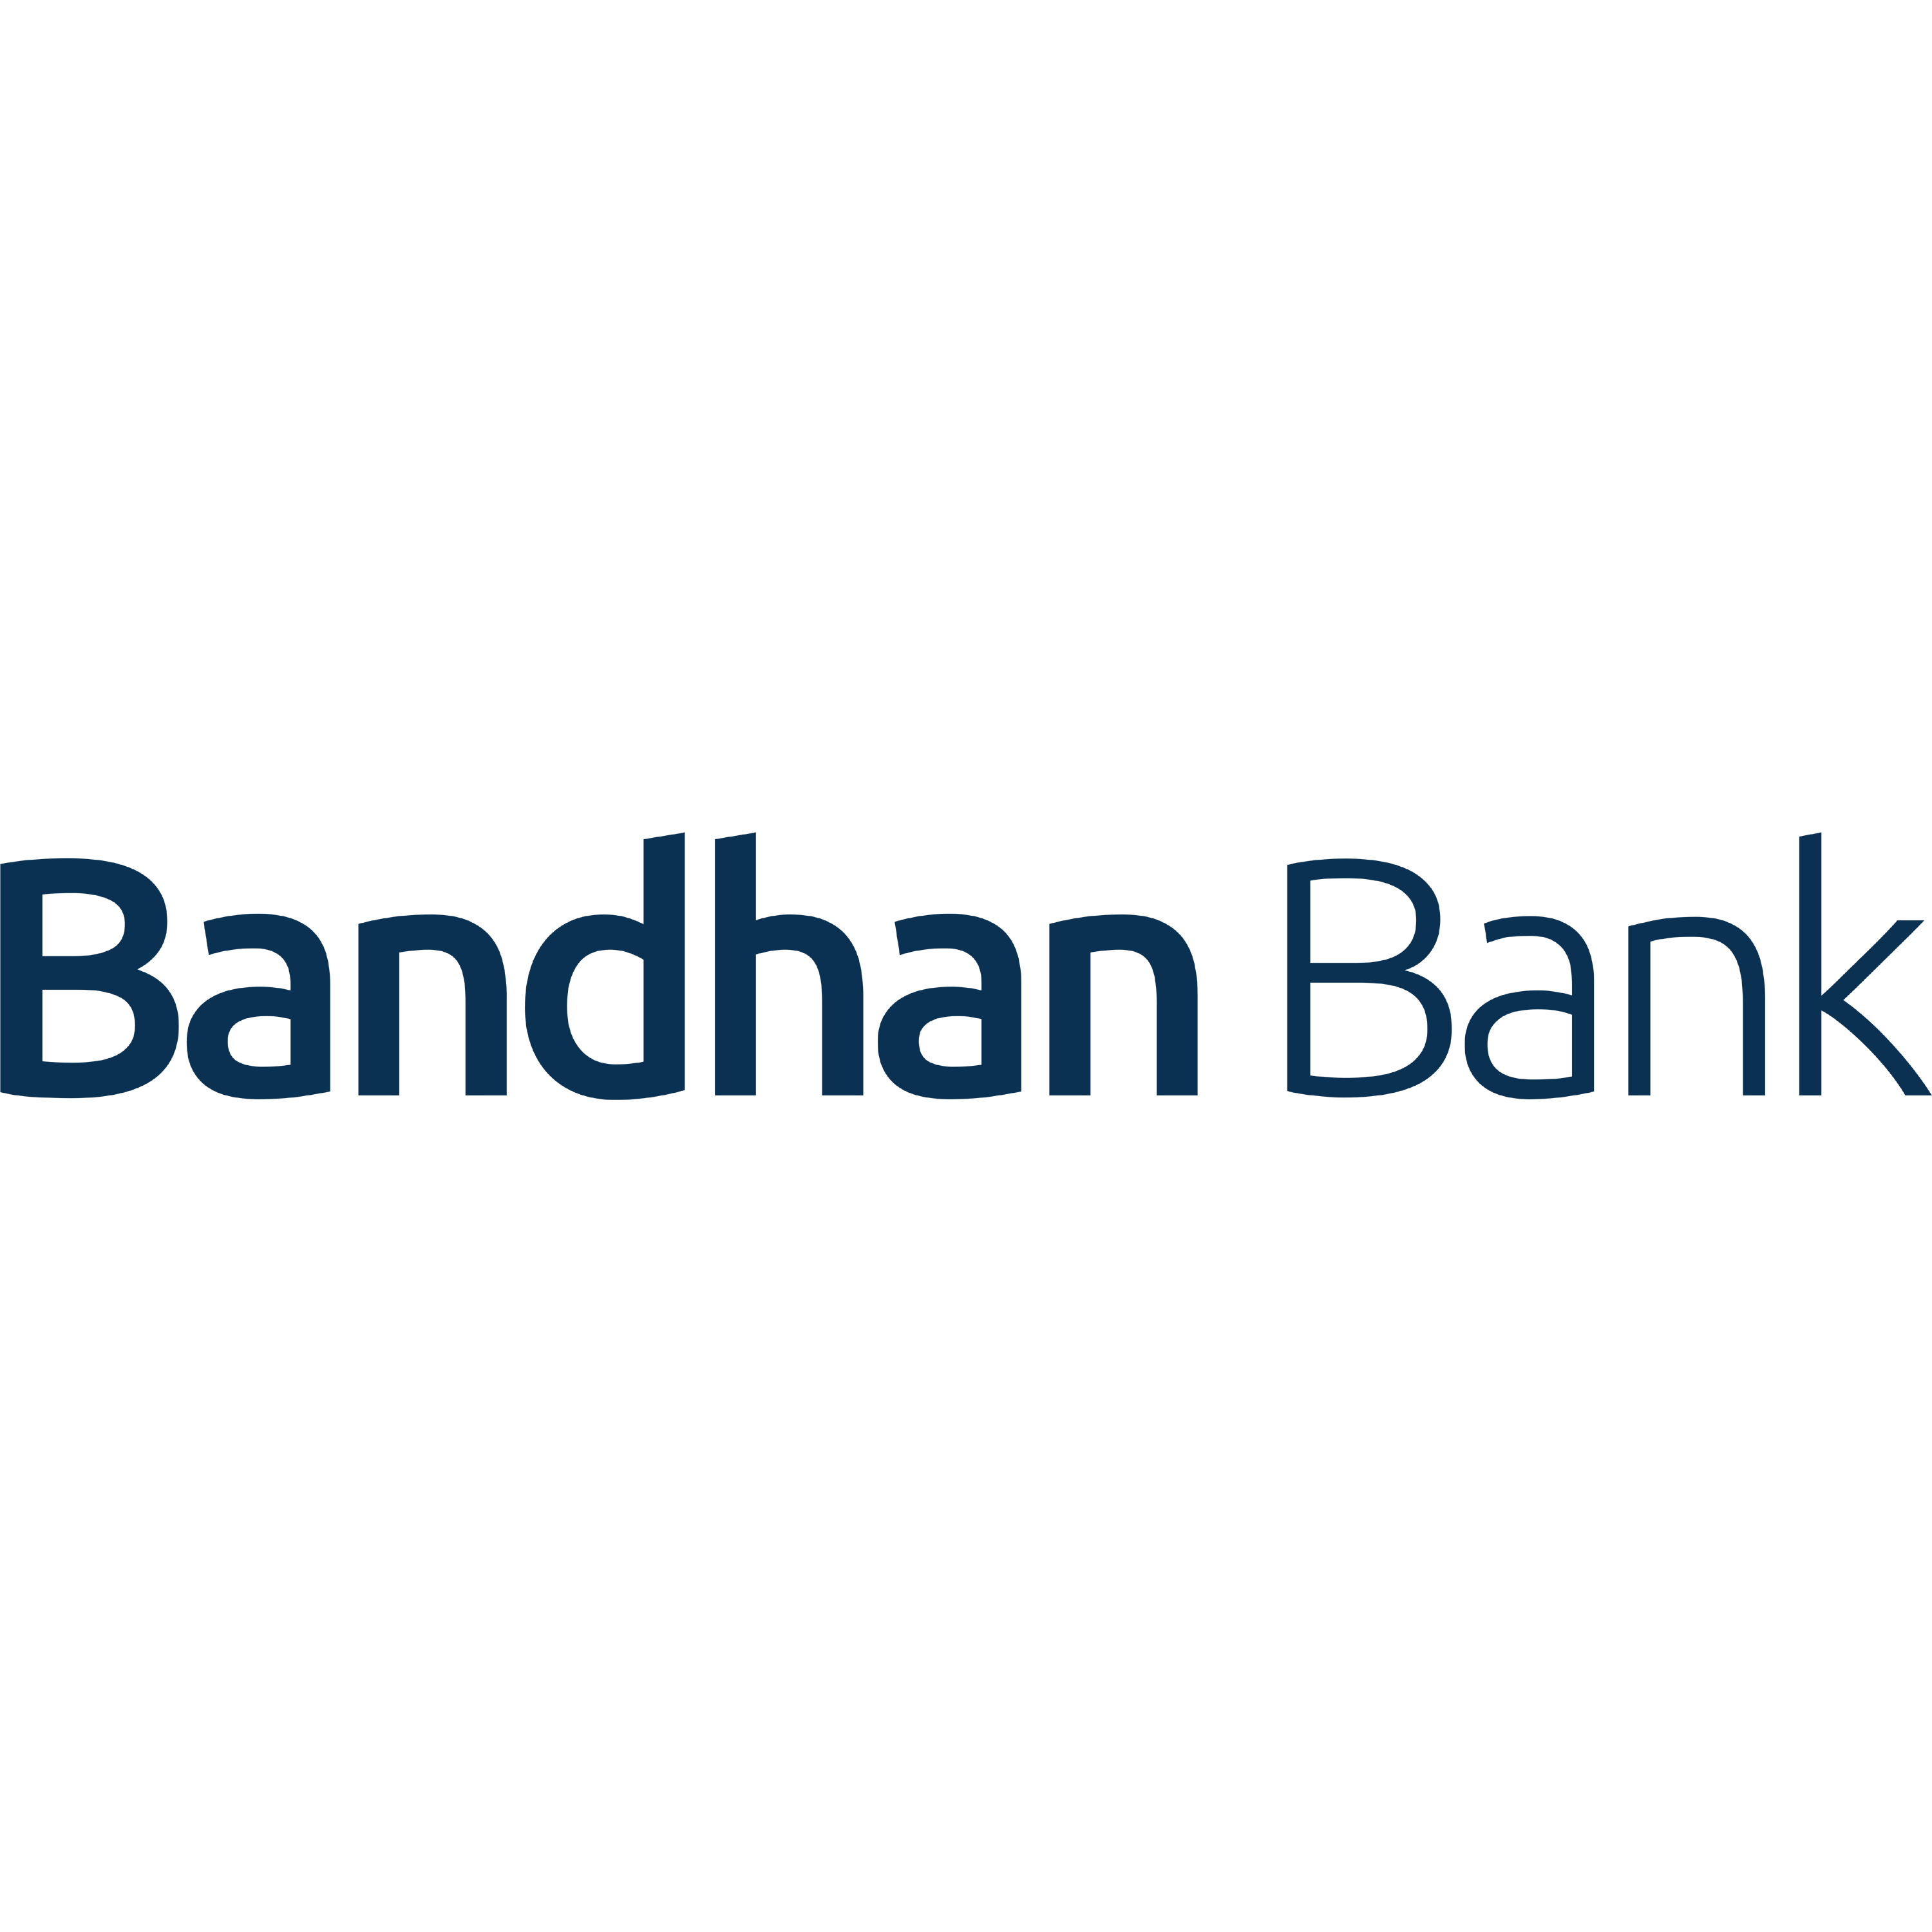 Bandhan Bank Logo Transparent Picture